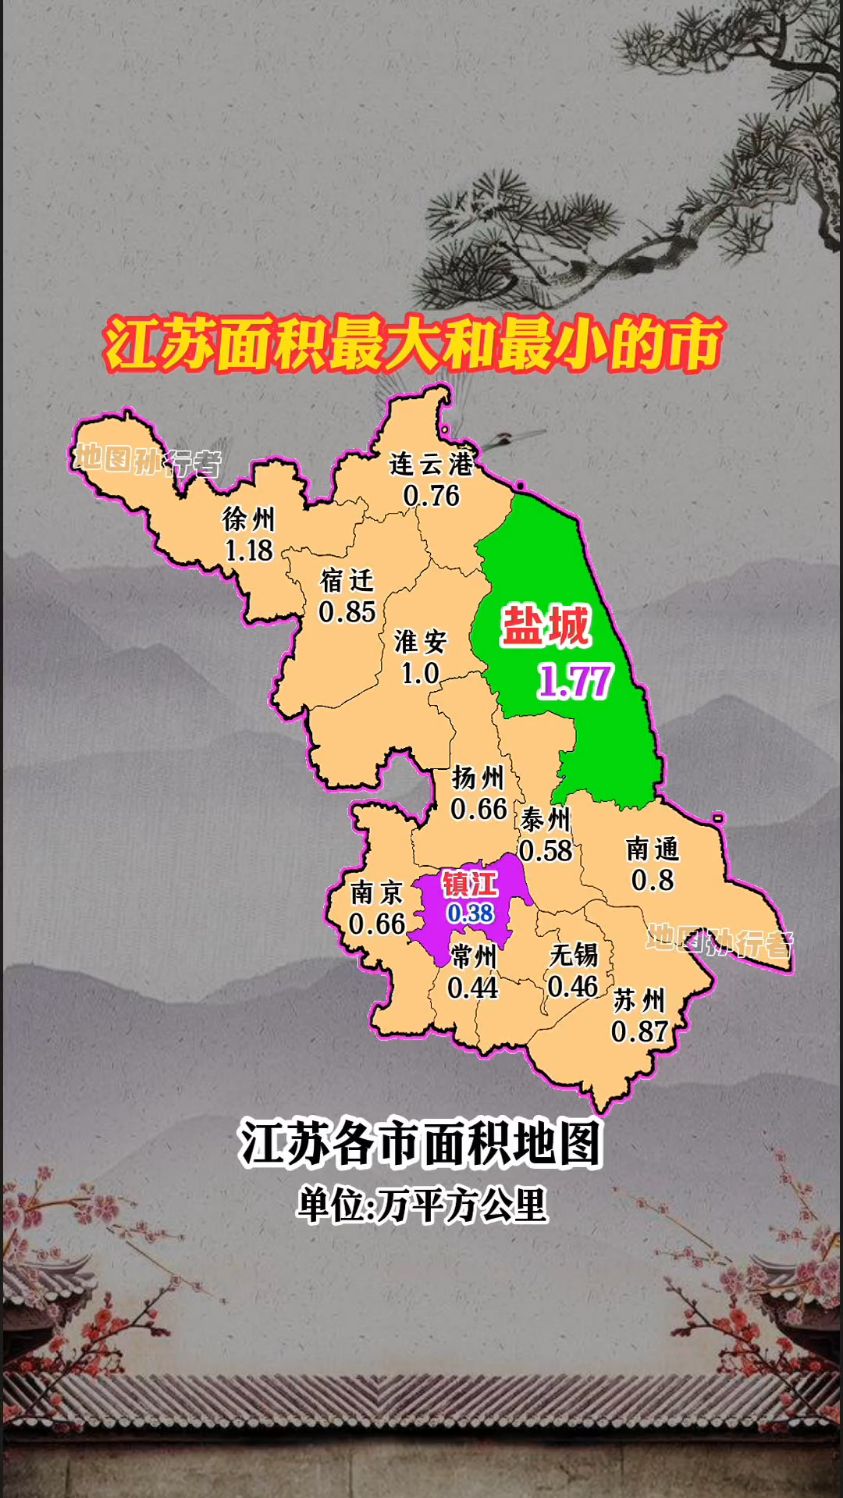 江苏面积最大和最小的市分别是盐城和镇江 江苏省各城市面积地图